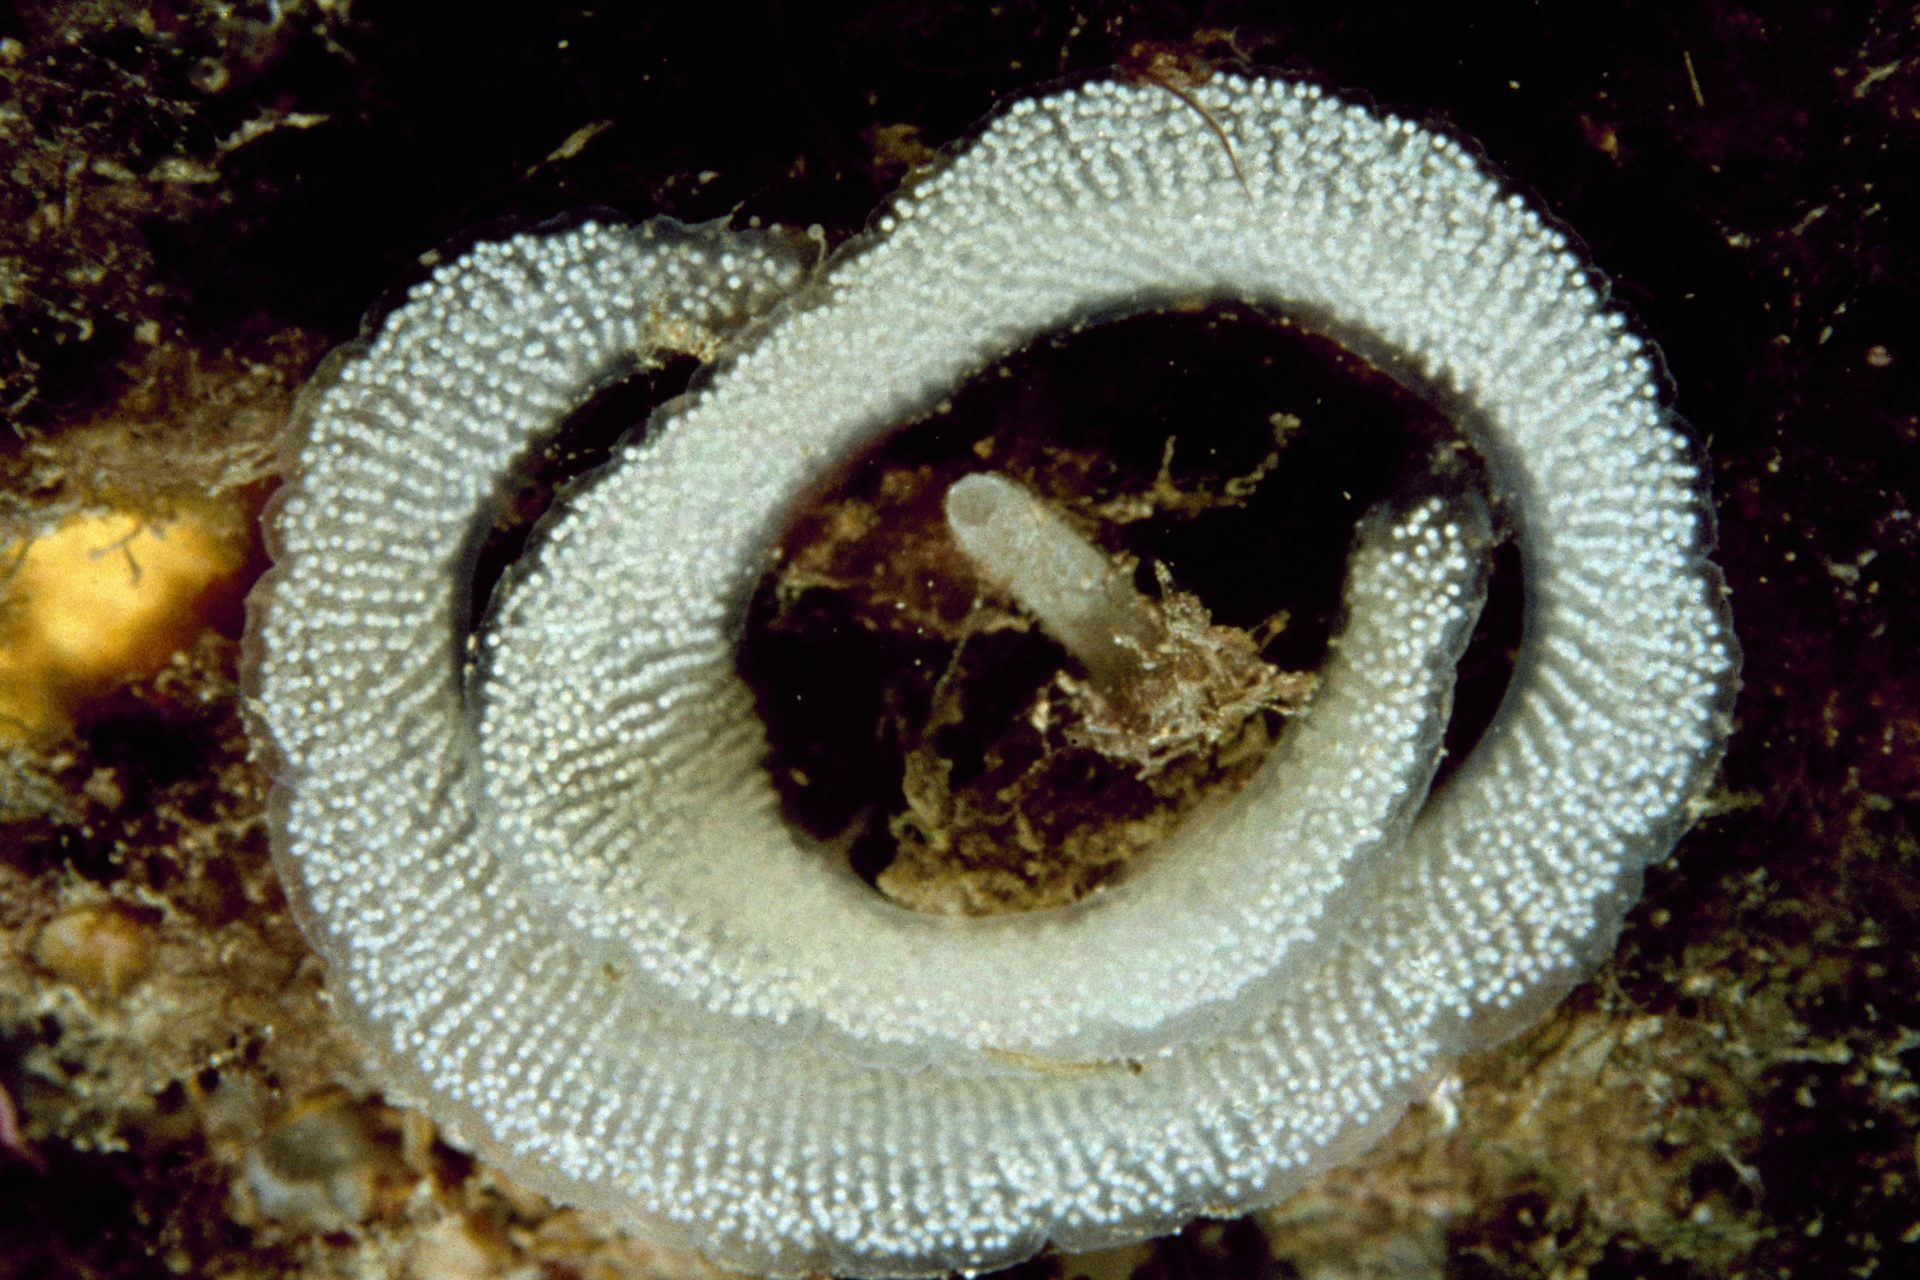 Sea slug egg mass